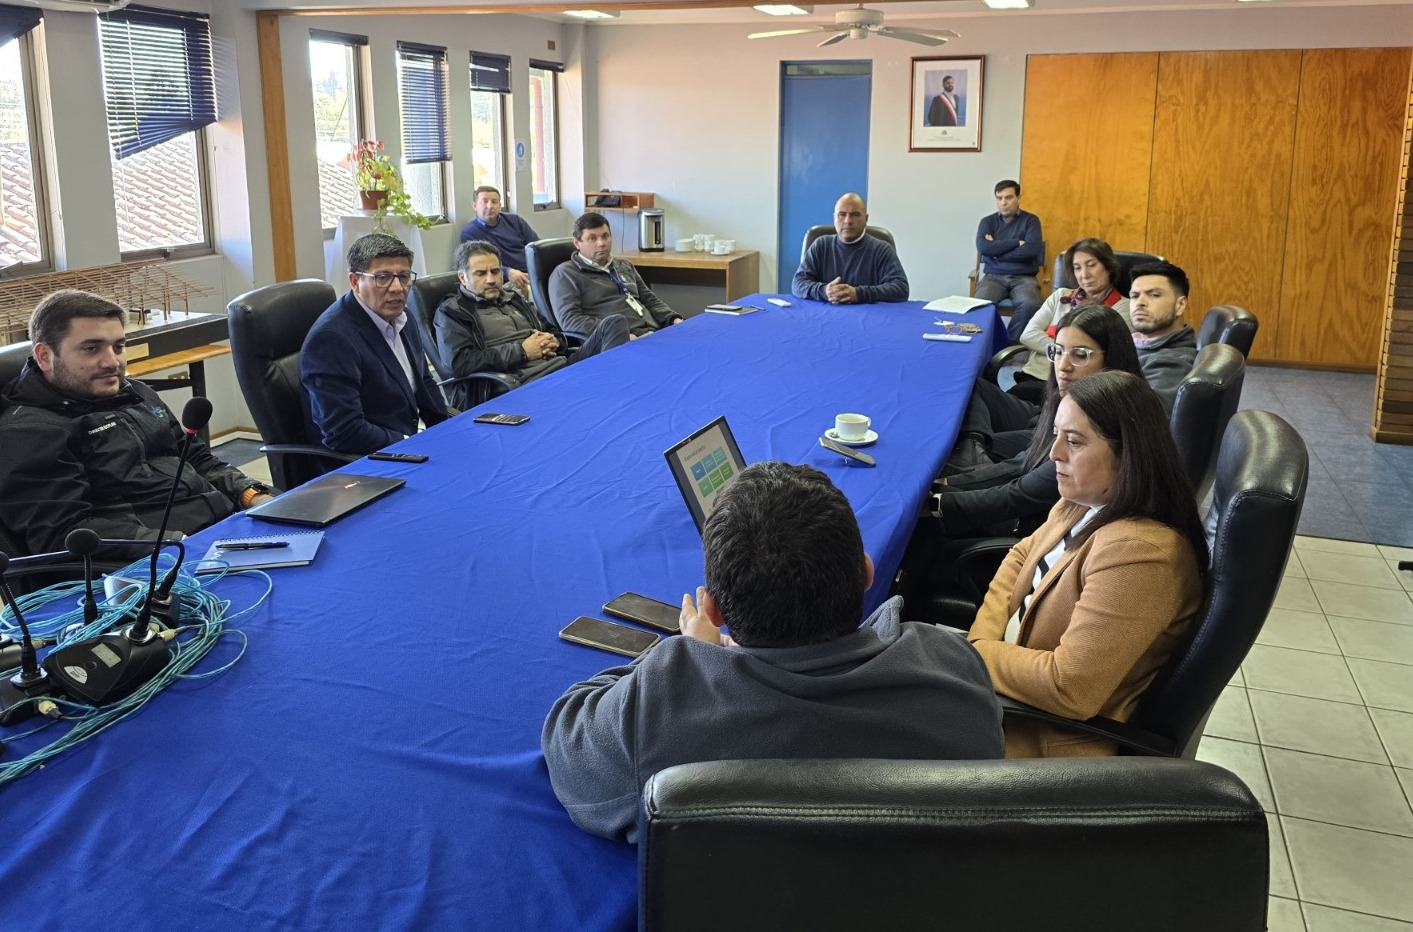 Santo Tomás Presenta Proyecto de Vinculación con el Medio “Sabor y Estrategia” en Quilaco